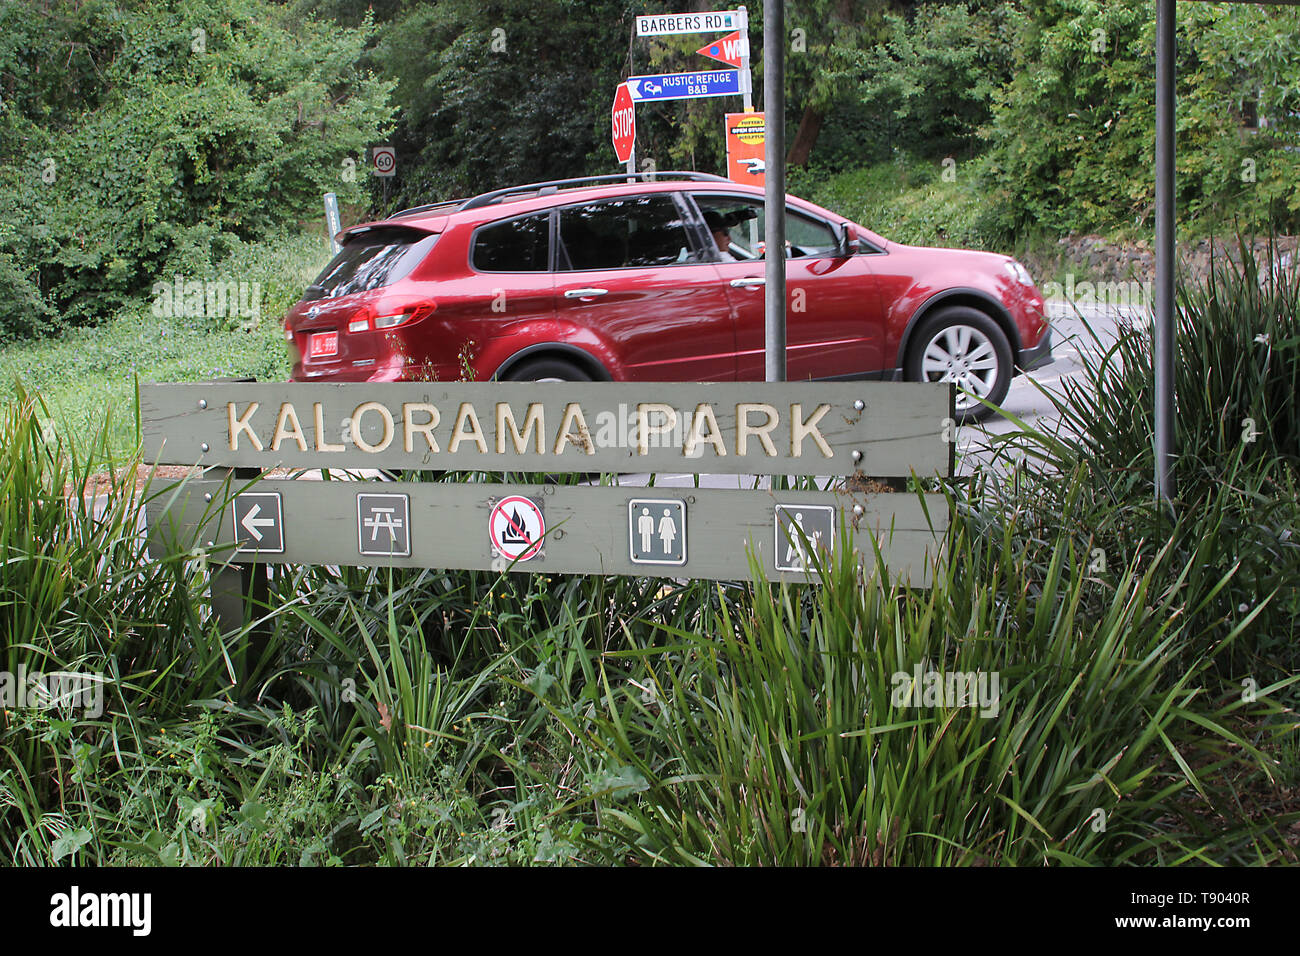 Besuchen sie Australien. , Kalorama Park in Victoria ist ideal für Picknicks, Barbecues oder einfach nur entspannen und genießen Sie die herrliche Umgebung. Stockfoto